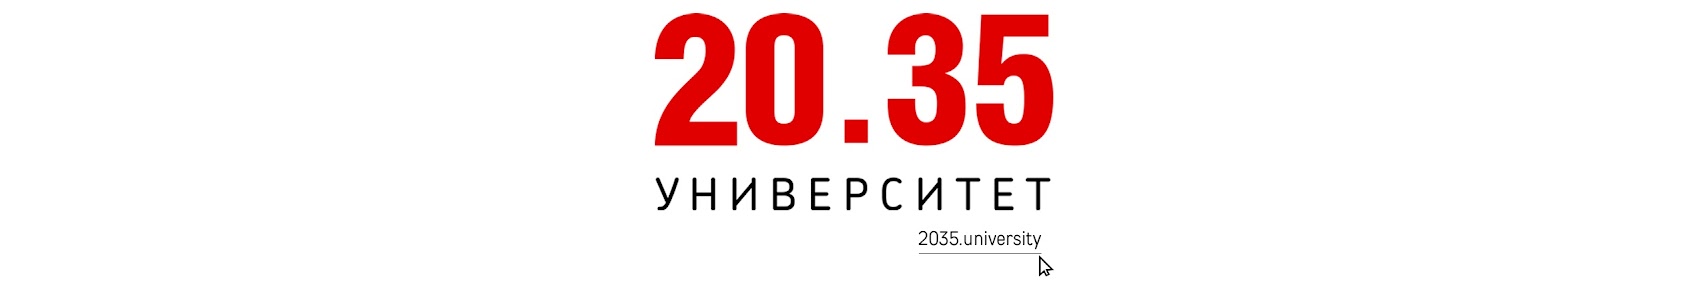 Сайте университета 2035